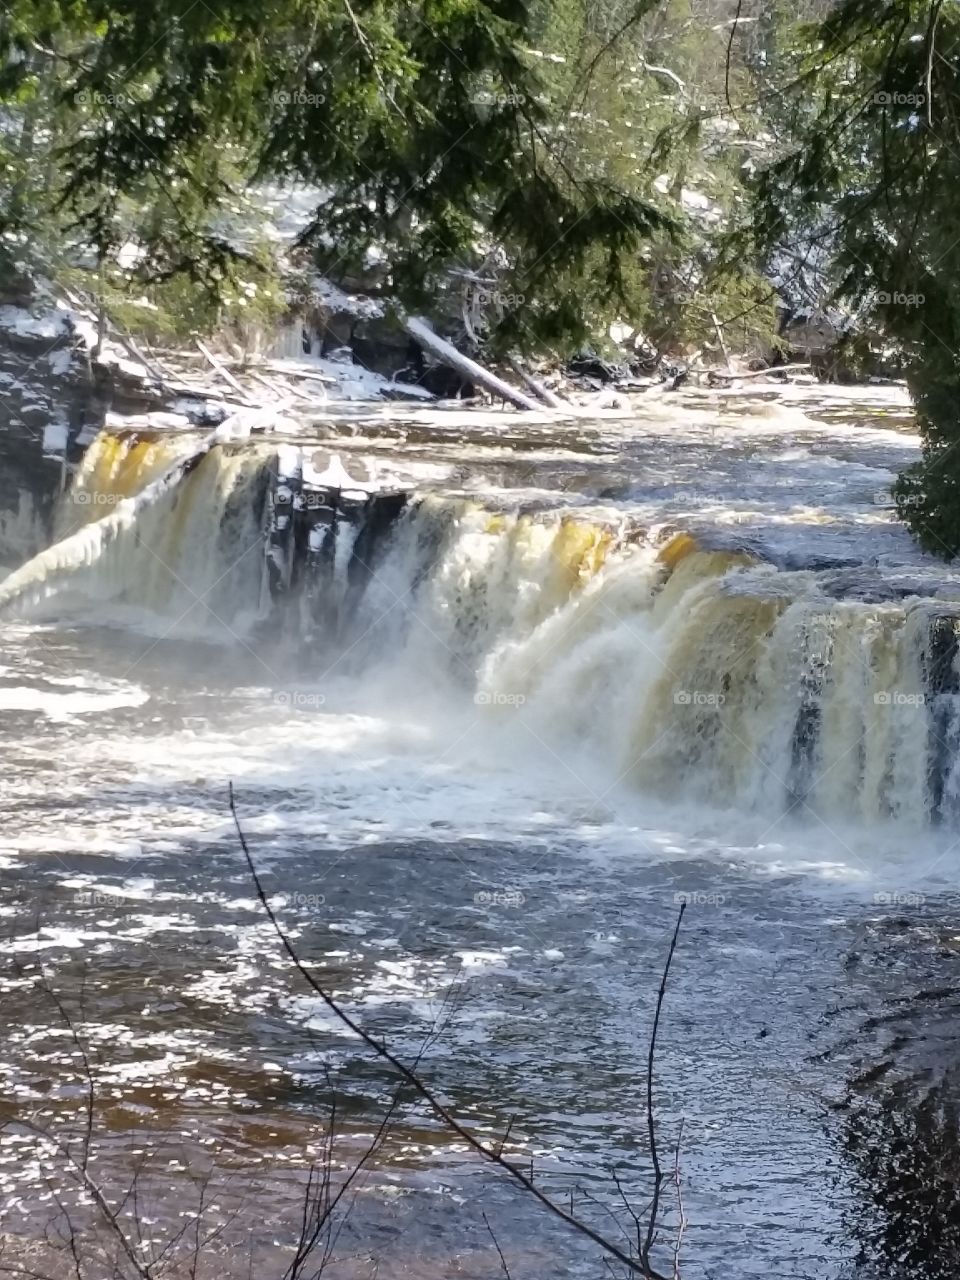 Presque Isle River falls